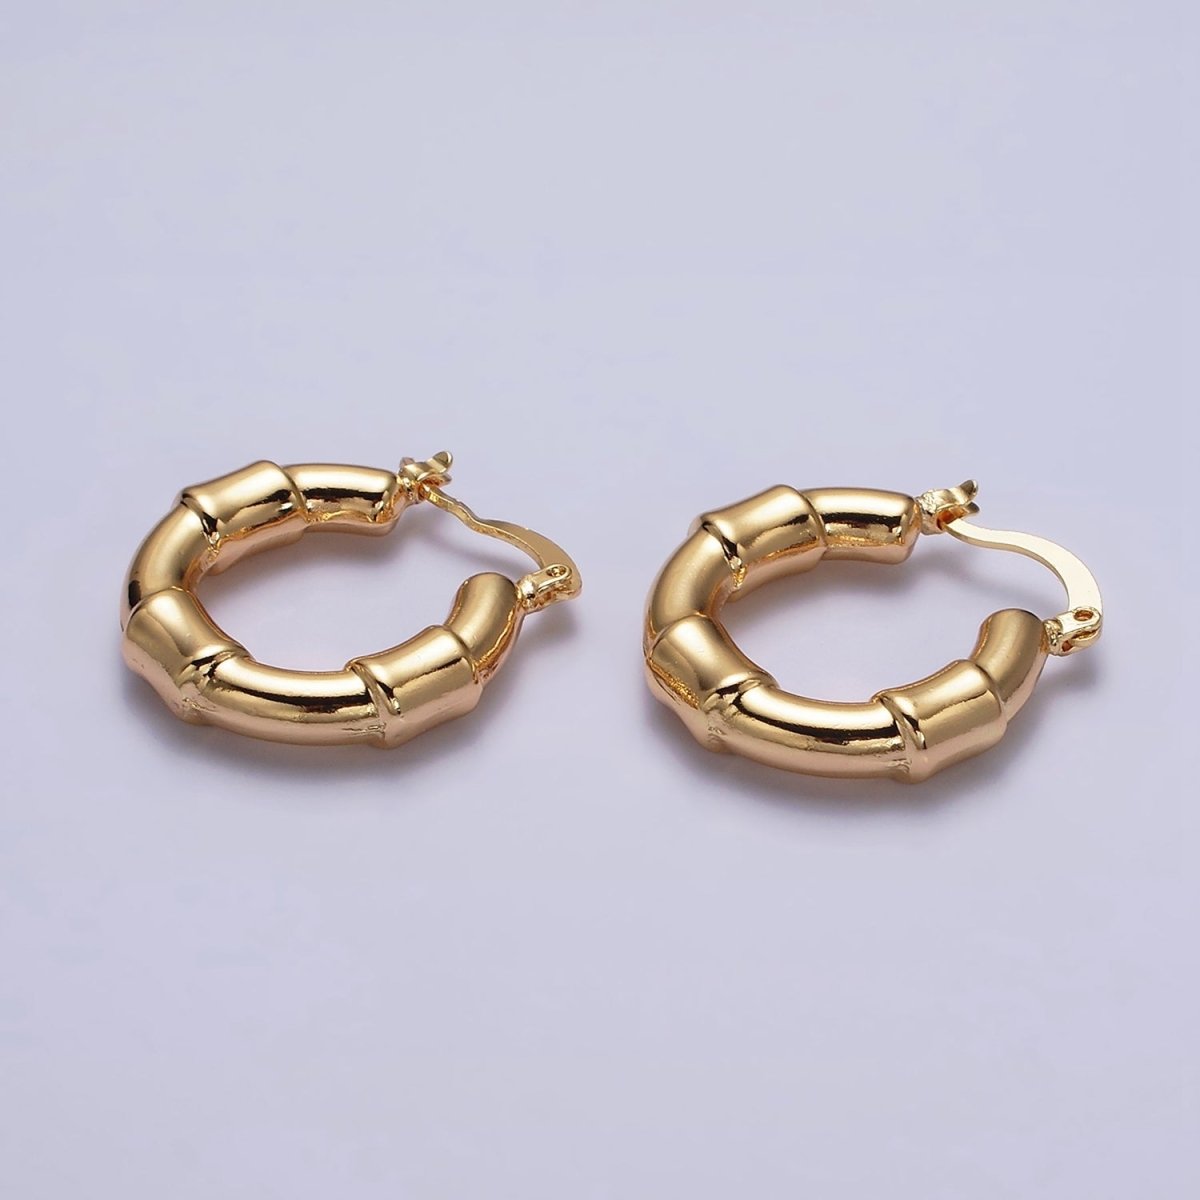 16K Gold Filled 25mm Triple Wide Wrap French Lock Latch Hoop Earrings | AE085 - DLUXCA